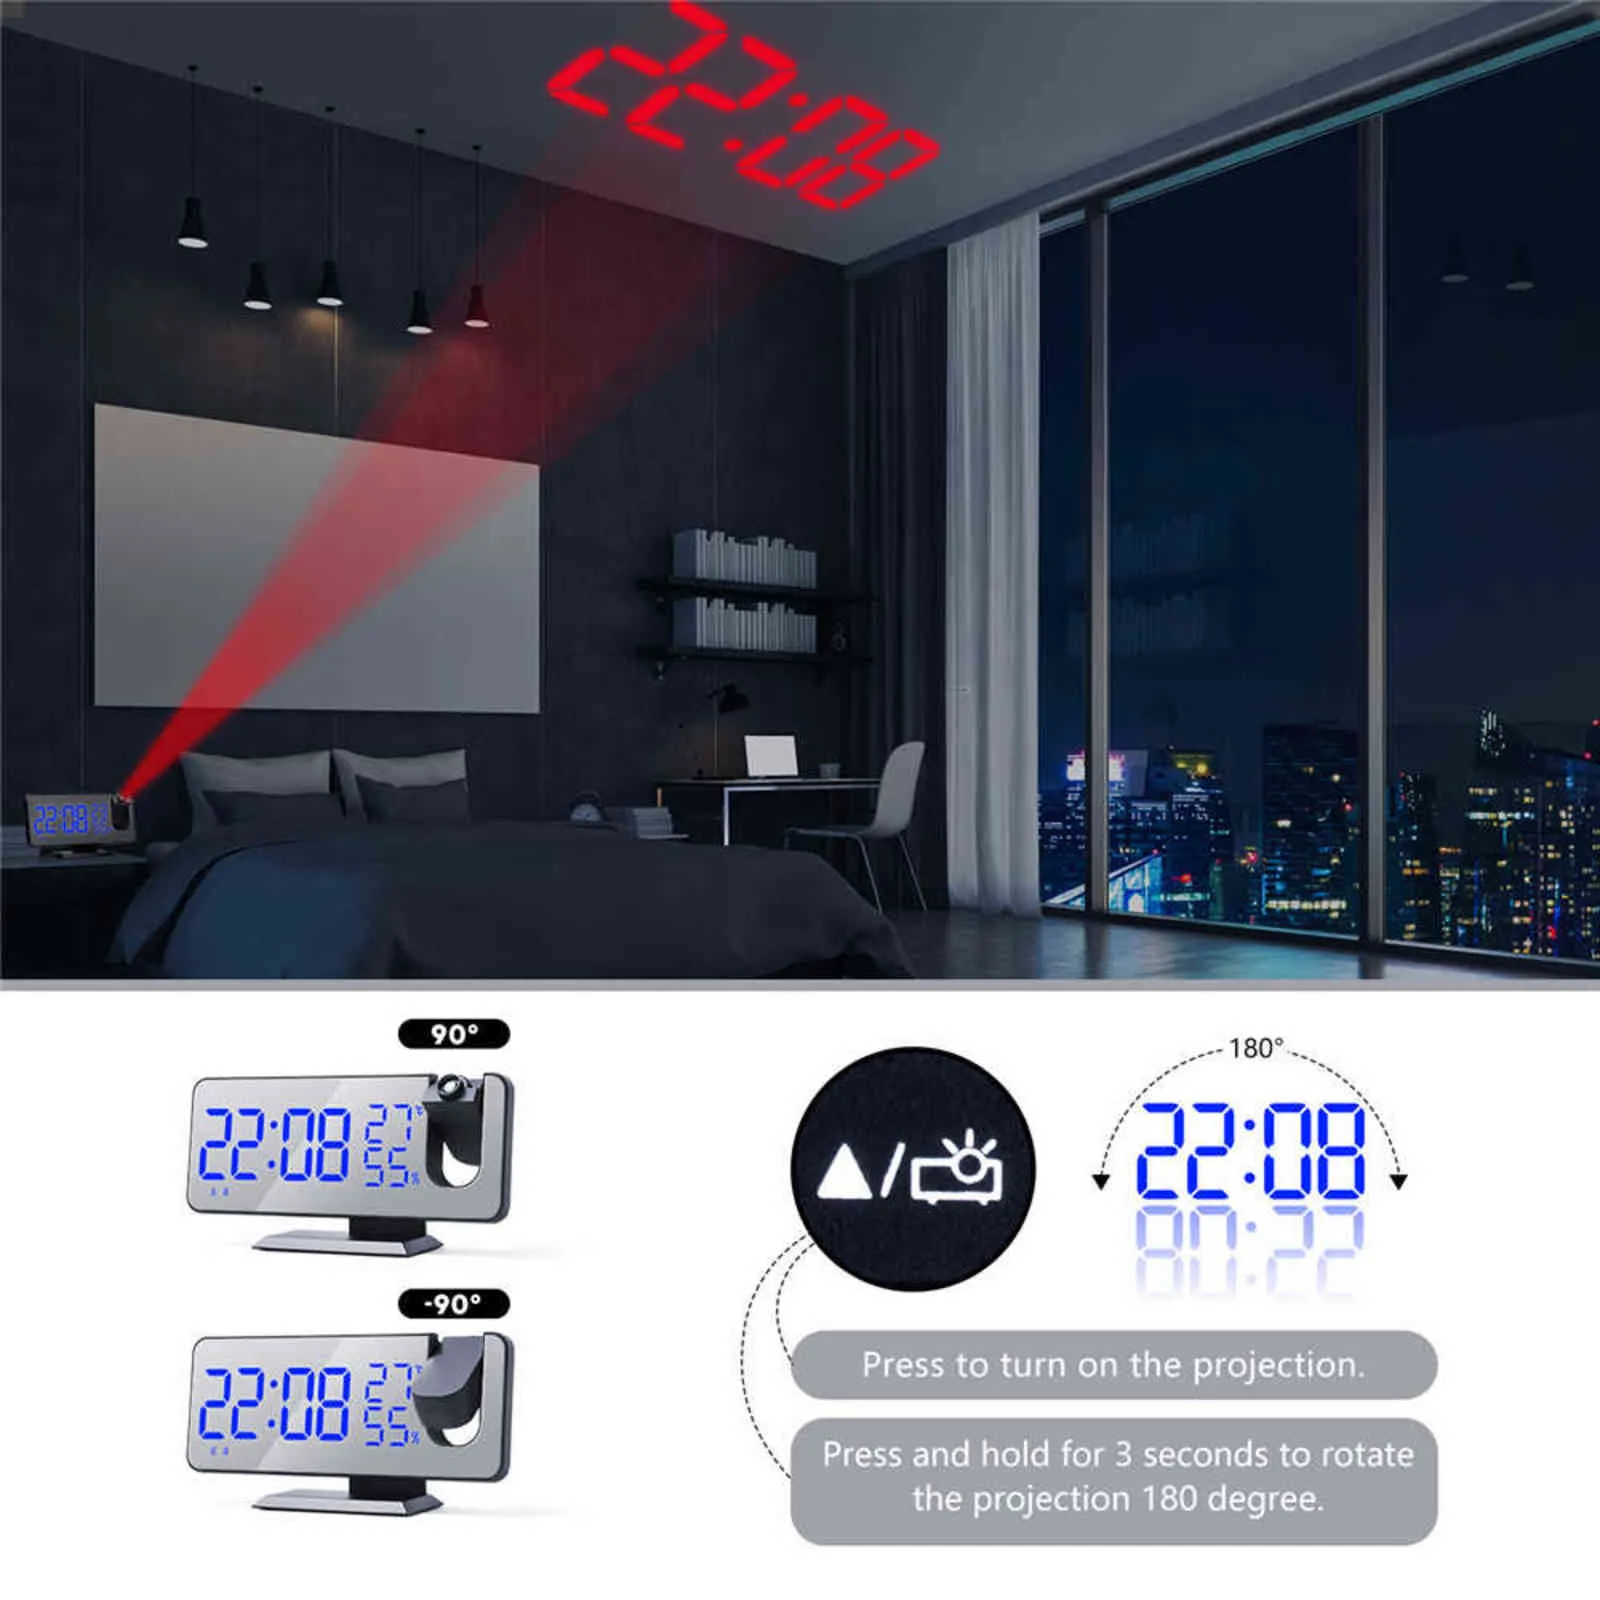 Réveil numérique Projection Radio Température Humidité Heure Nuit Affichage Miroir LED Horloge USB Sortie Ports Table Horloge 211111